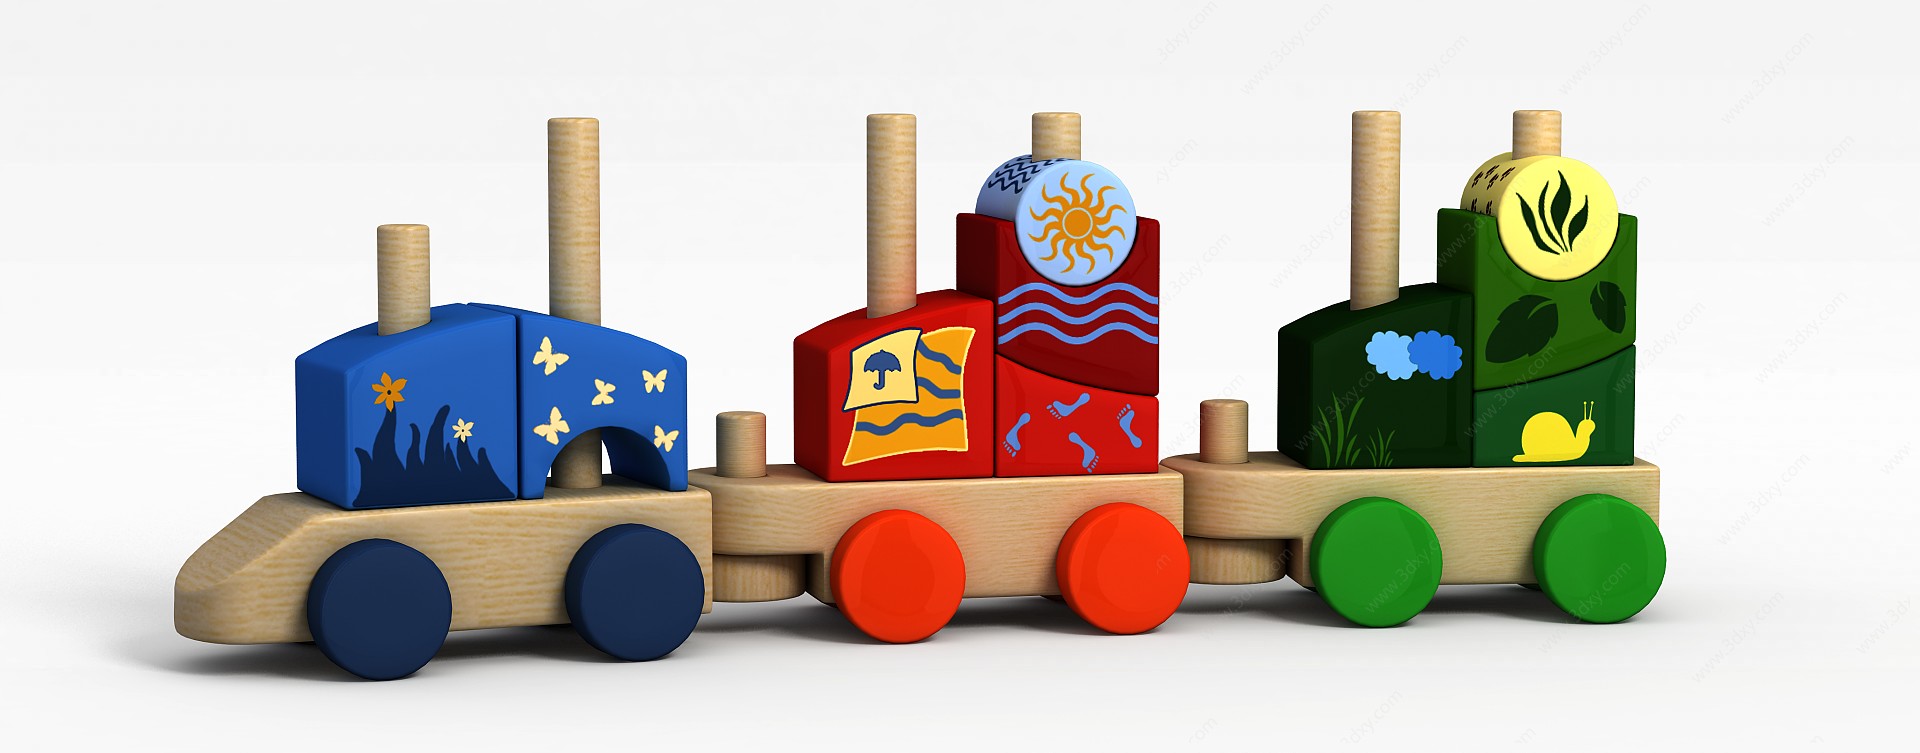 火车儿童玩具3D模型